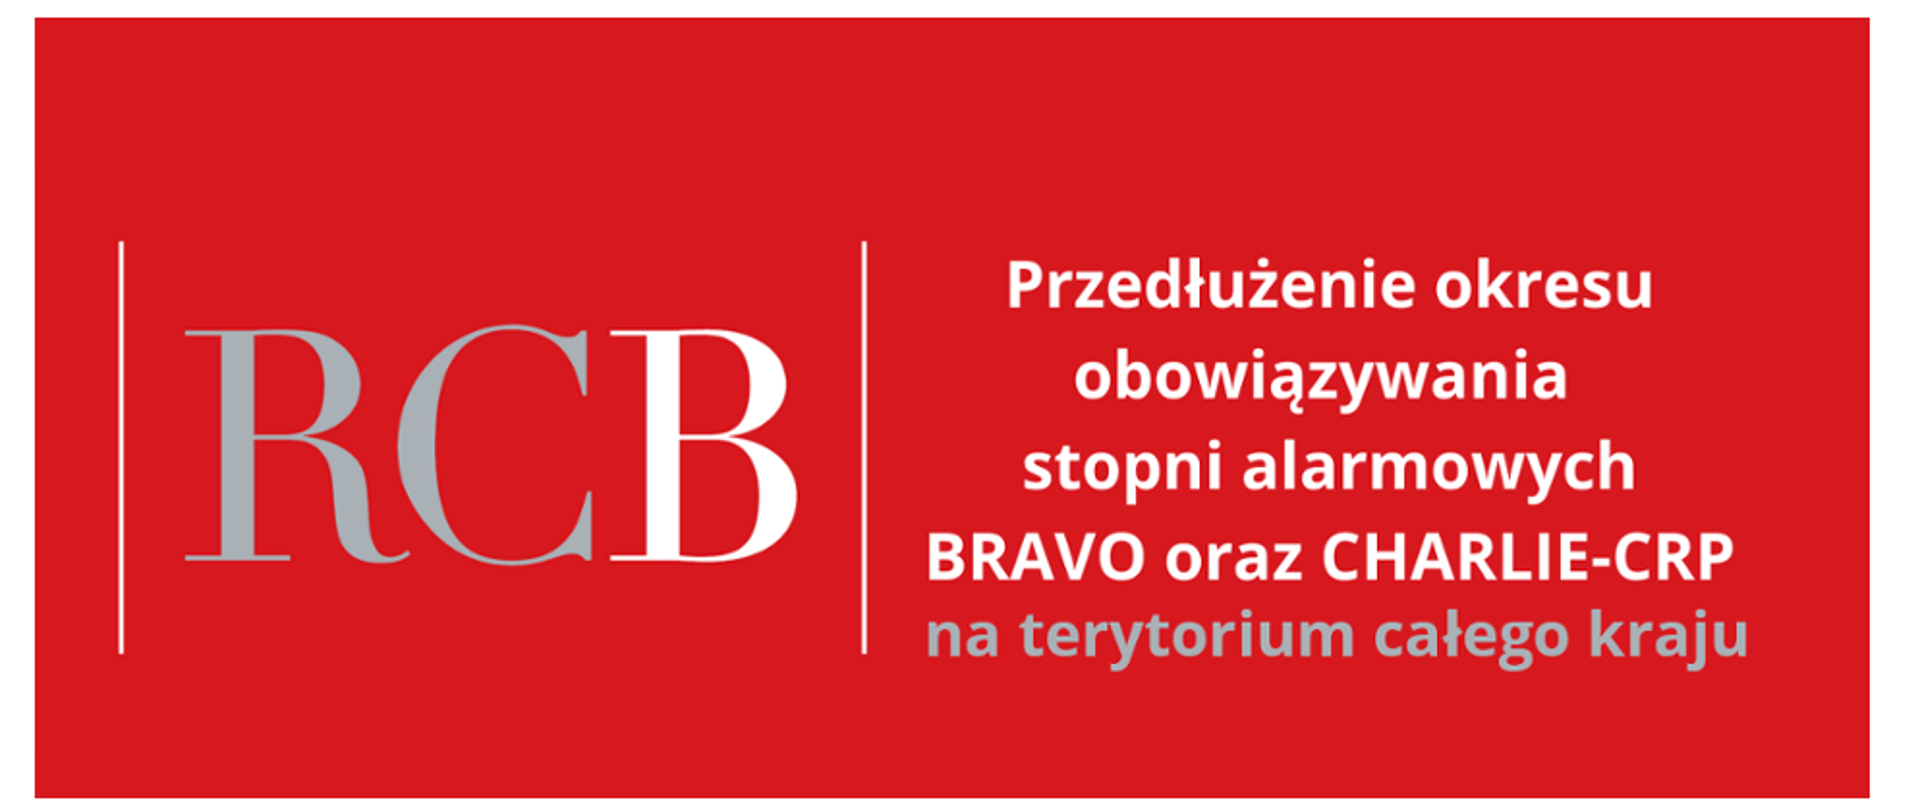 na czerwonym tle białymi literami zamieszczono informację o przedłużeniu obowiązywania stopni alarmowych BRAVO oraz CHARLIE- CRP na terytorium całego kraju.